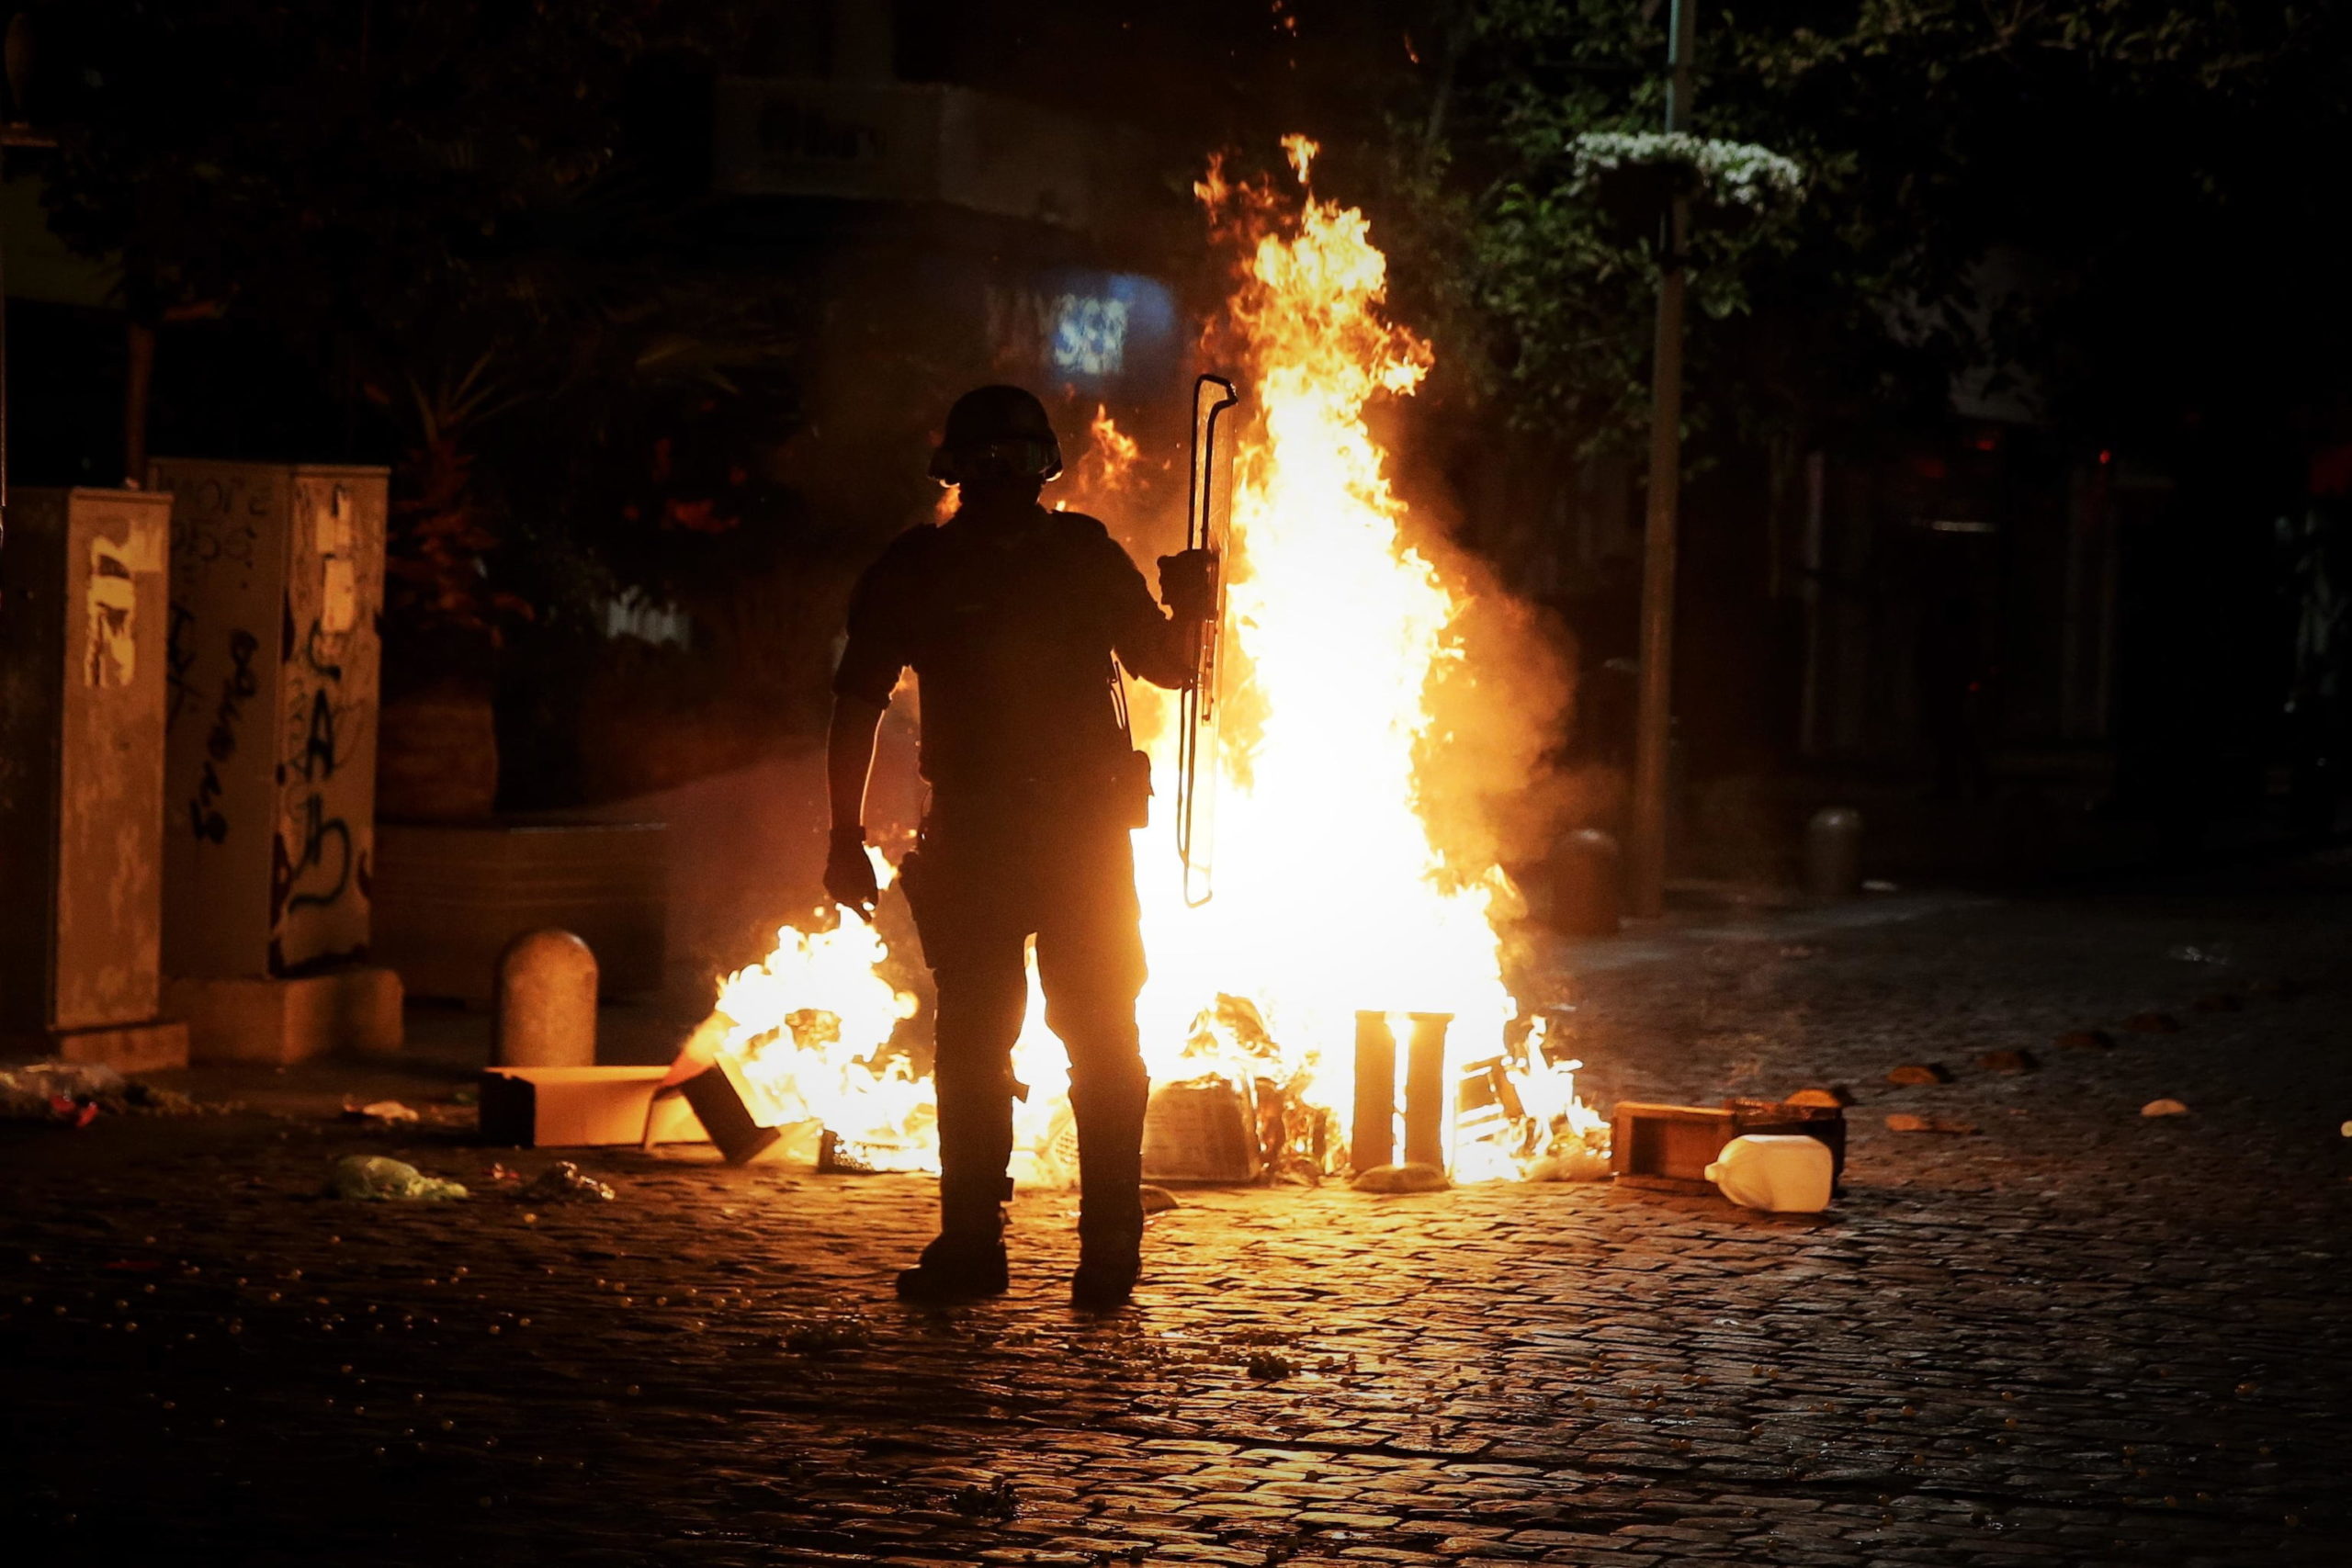 Le proteste continuano durante la notte con piccoli incendi nelle vie di Viña del Mar